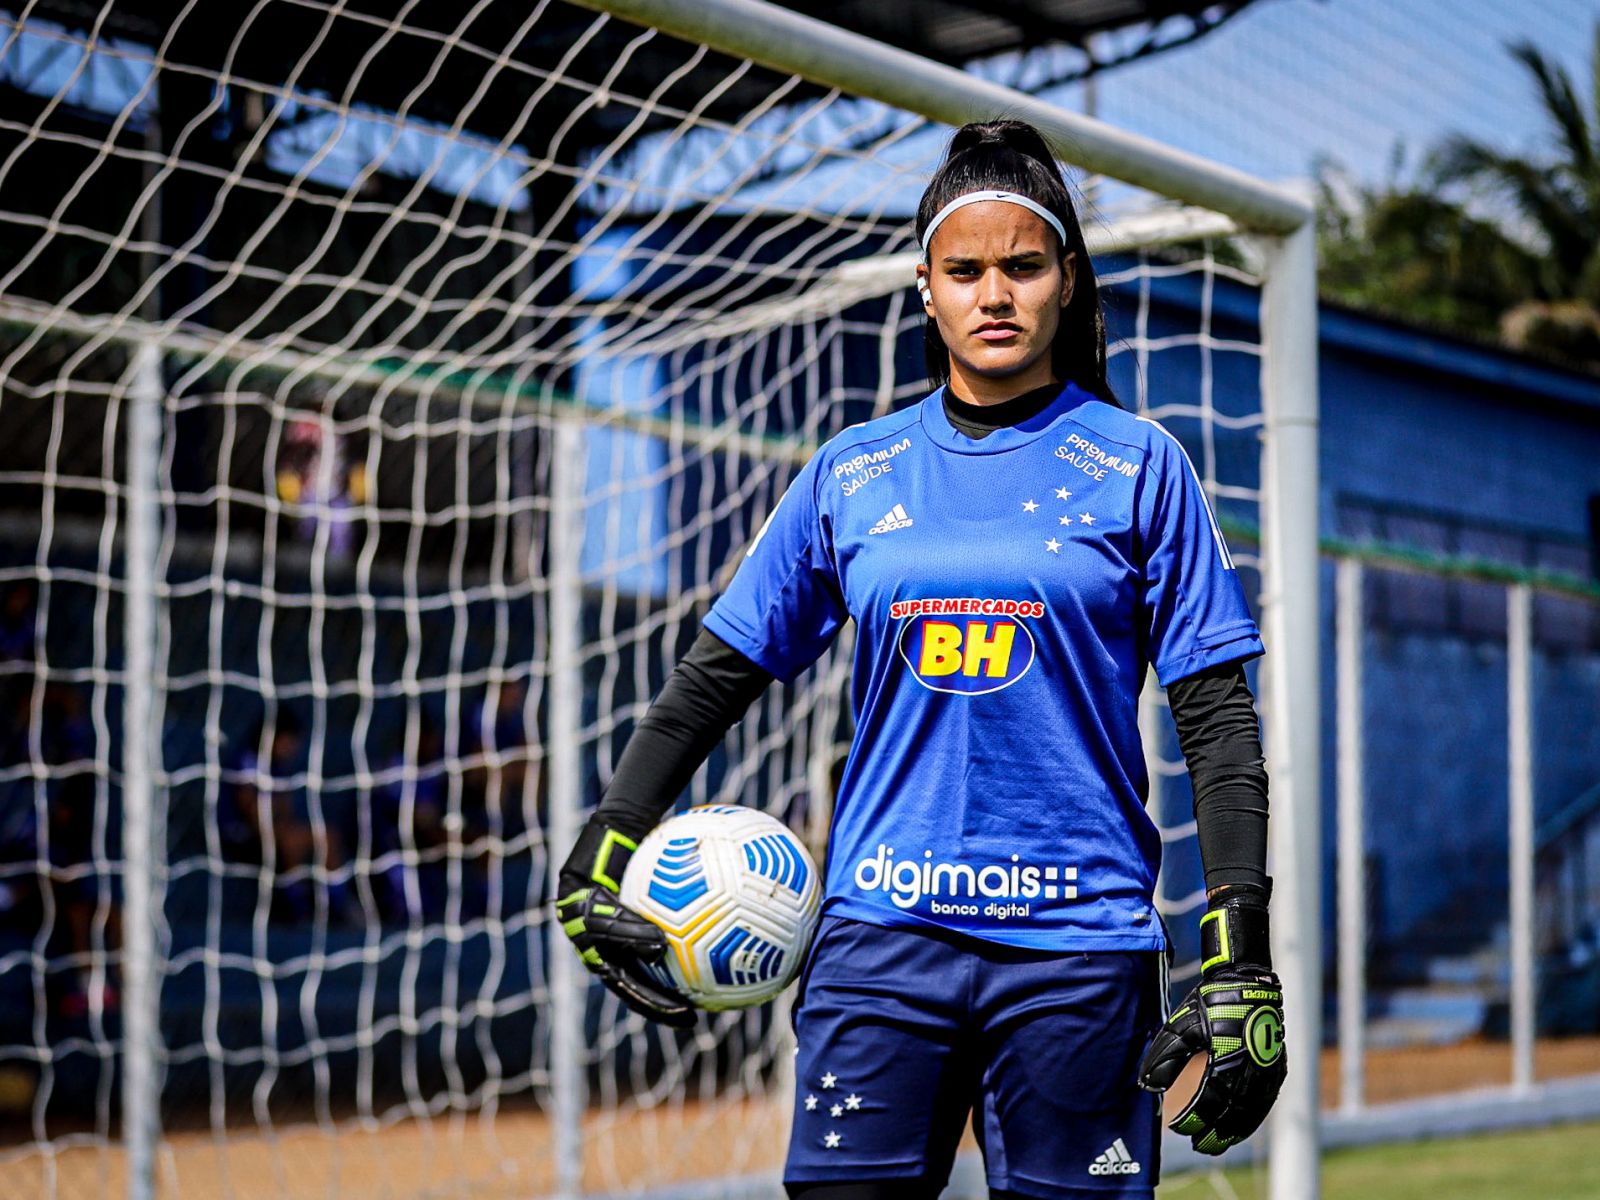 Goleira Taty Silva reforça o time feminino do Cruzeiro na temporada 2021